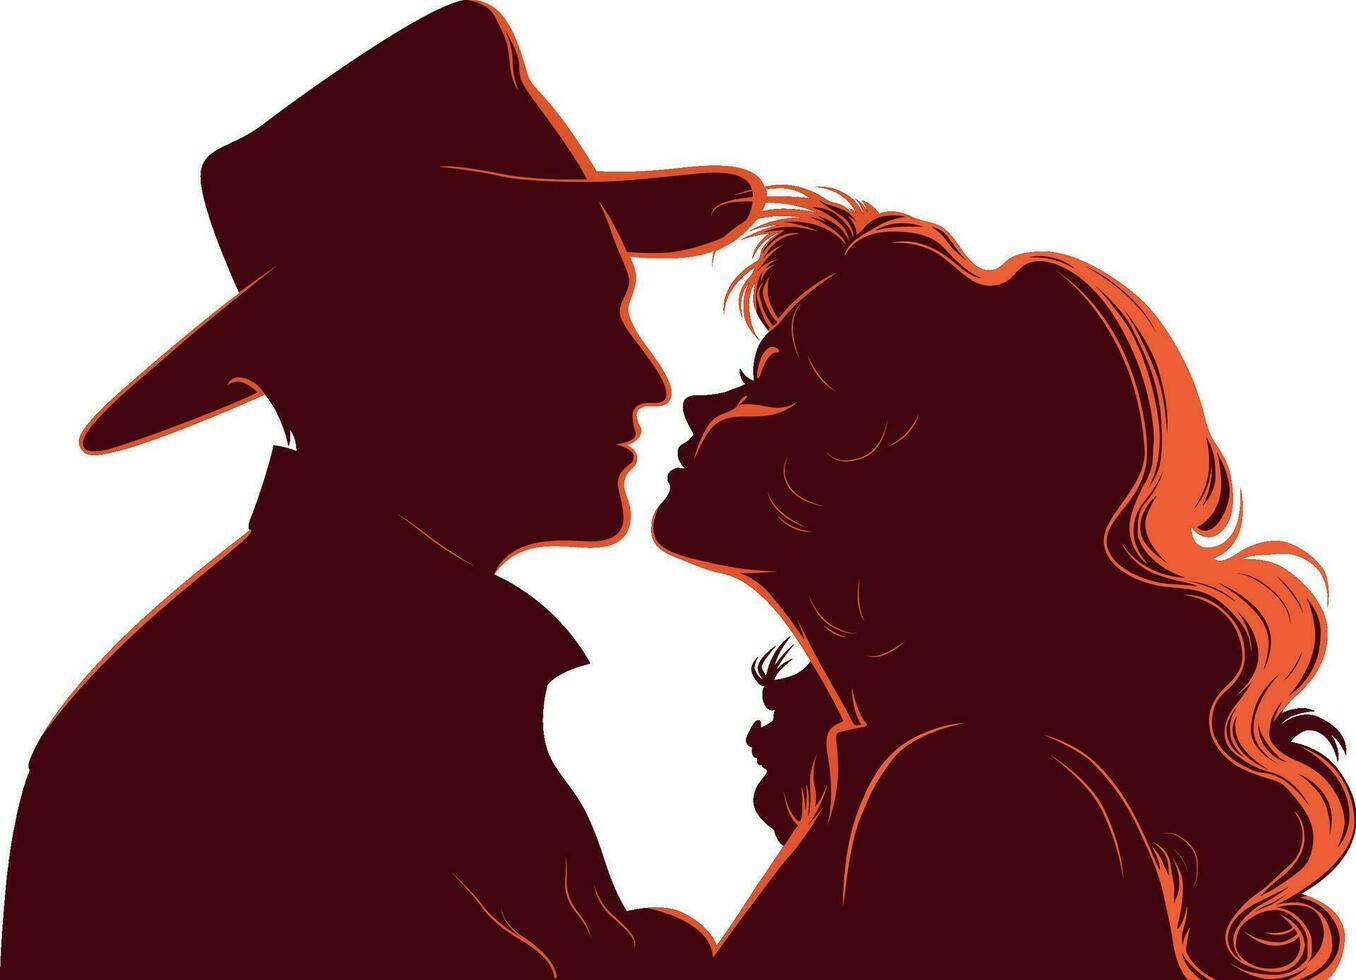 Vektor Illustration von ein liebend Paar im dunkel rot Silhouette.